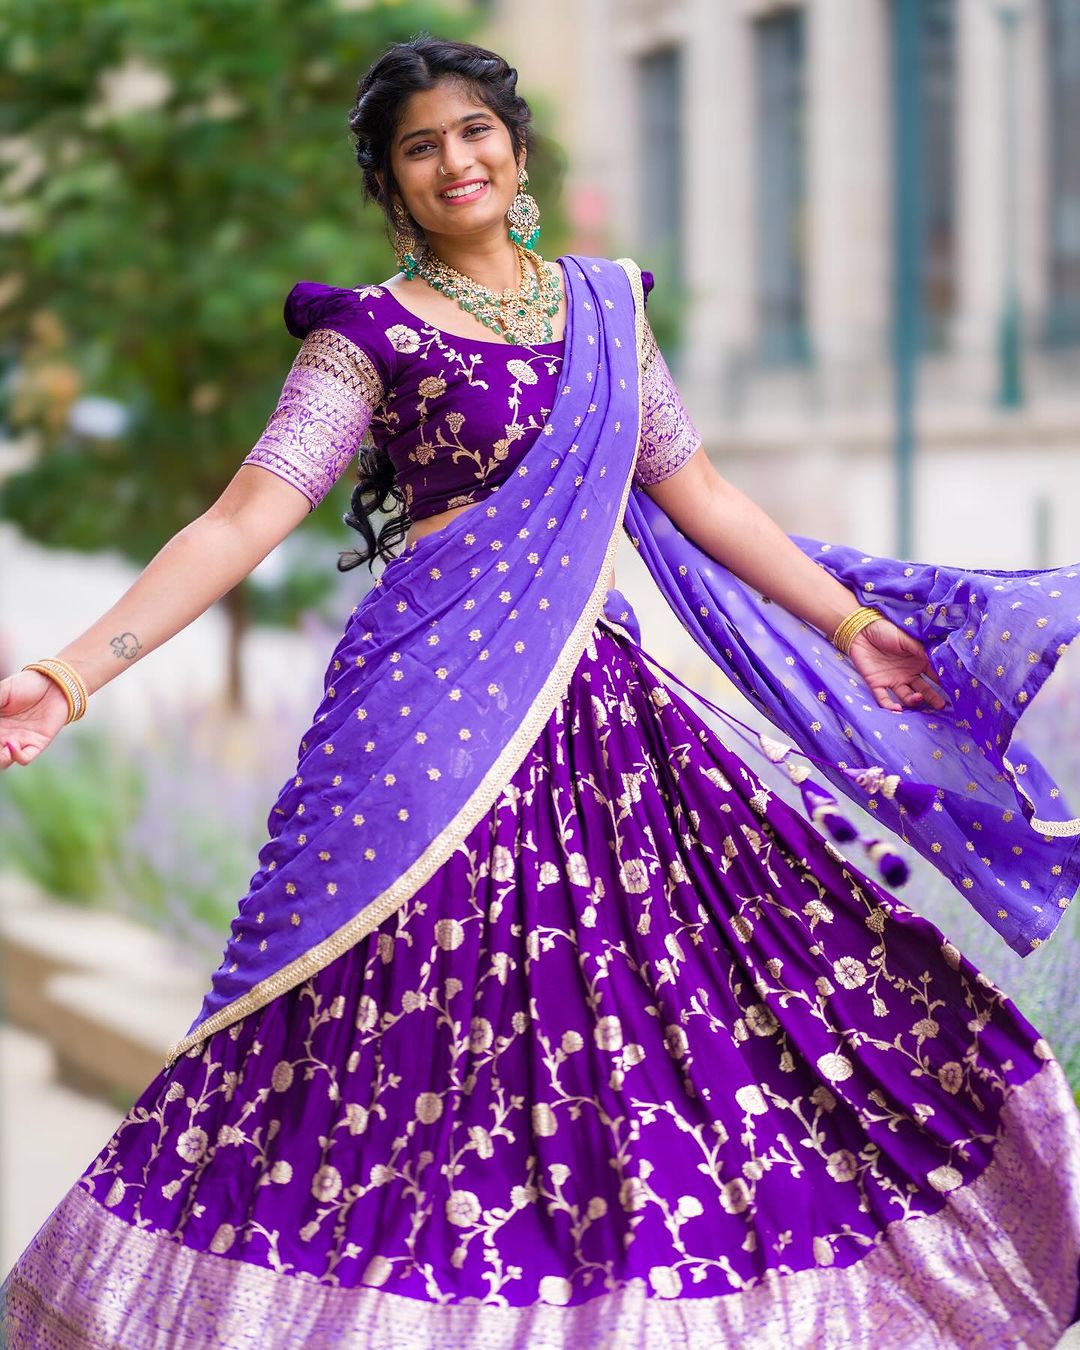 Buy Madurai Sungudi Cotton Saree - Hand Weaving and Wax Printed Unique  Design & Half & Half Saree - Purple & White Color Wax Design for Women. at  Amazon.in